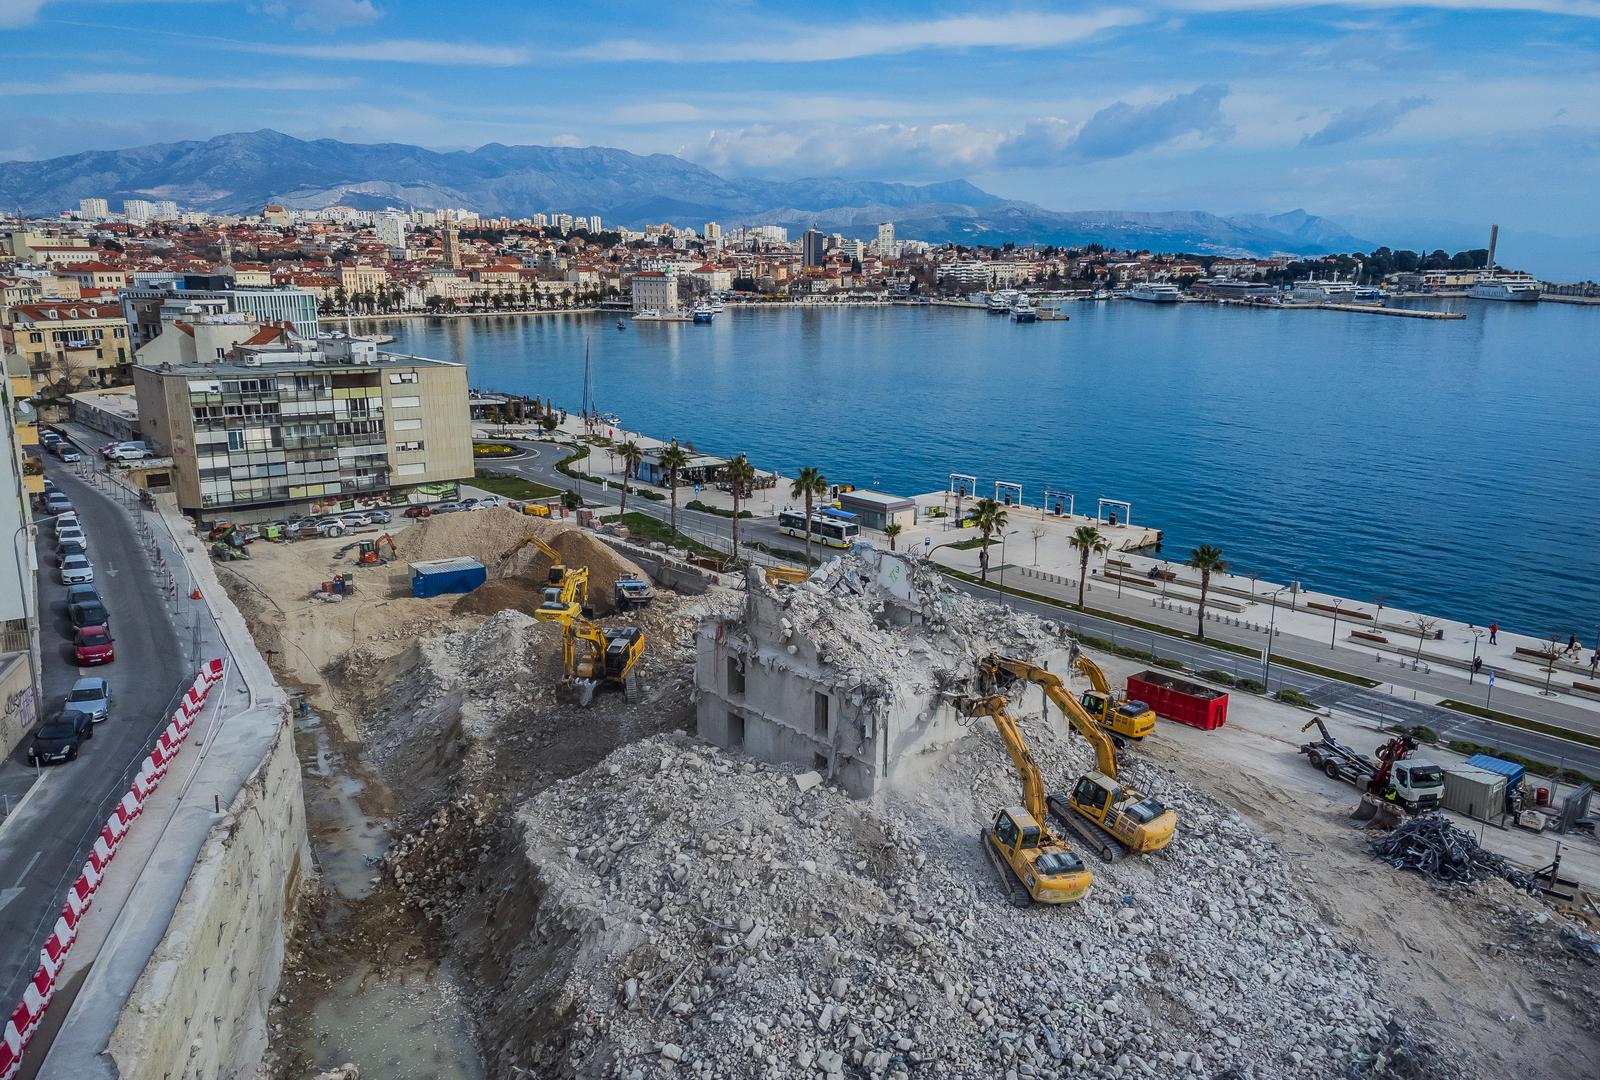 Srušen je posljednji trag bivšeg hotela Marjan u Splitu. Rušenje nekadašnjeg simbola Splita započelo je početkom proljeća prošle godine, a nakon uklanjanja stare strukture, uslijedit će izgradnja potpuno novog objekta.